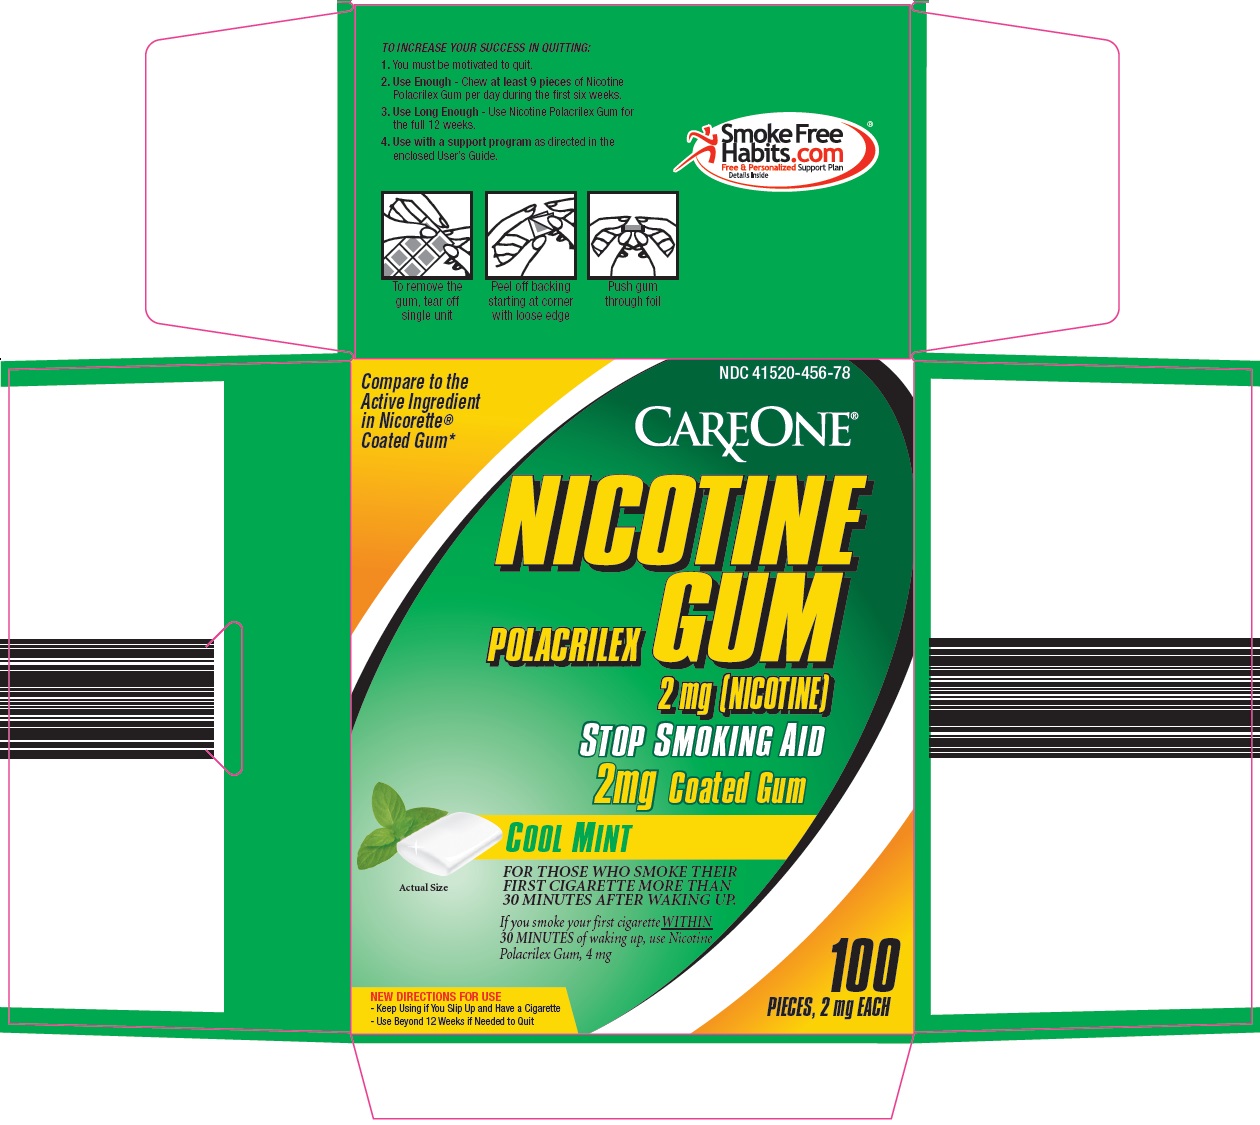 CareOne Nicotine Polacrilex Gum Image 1